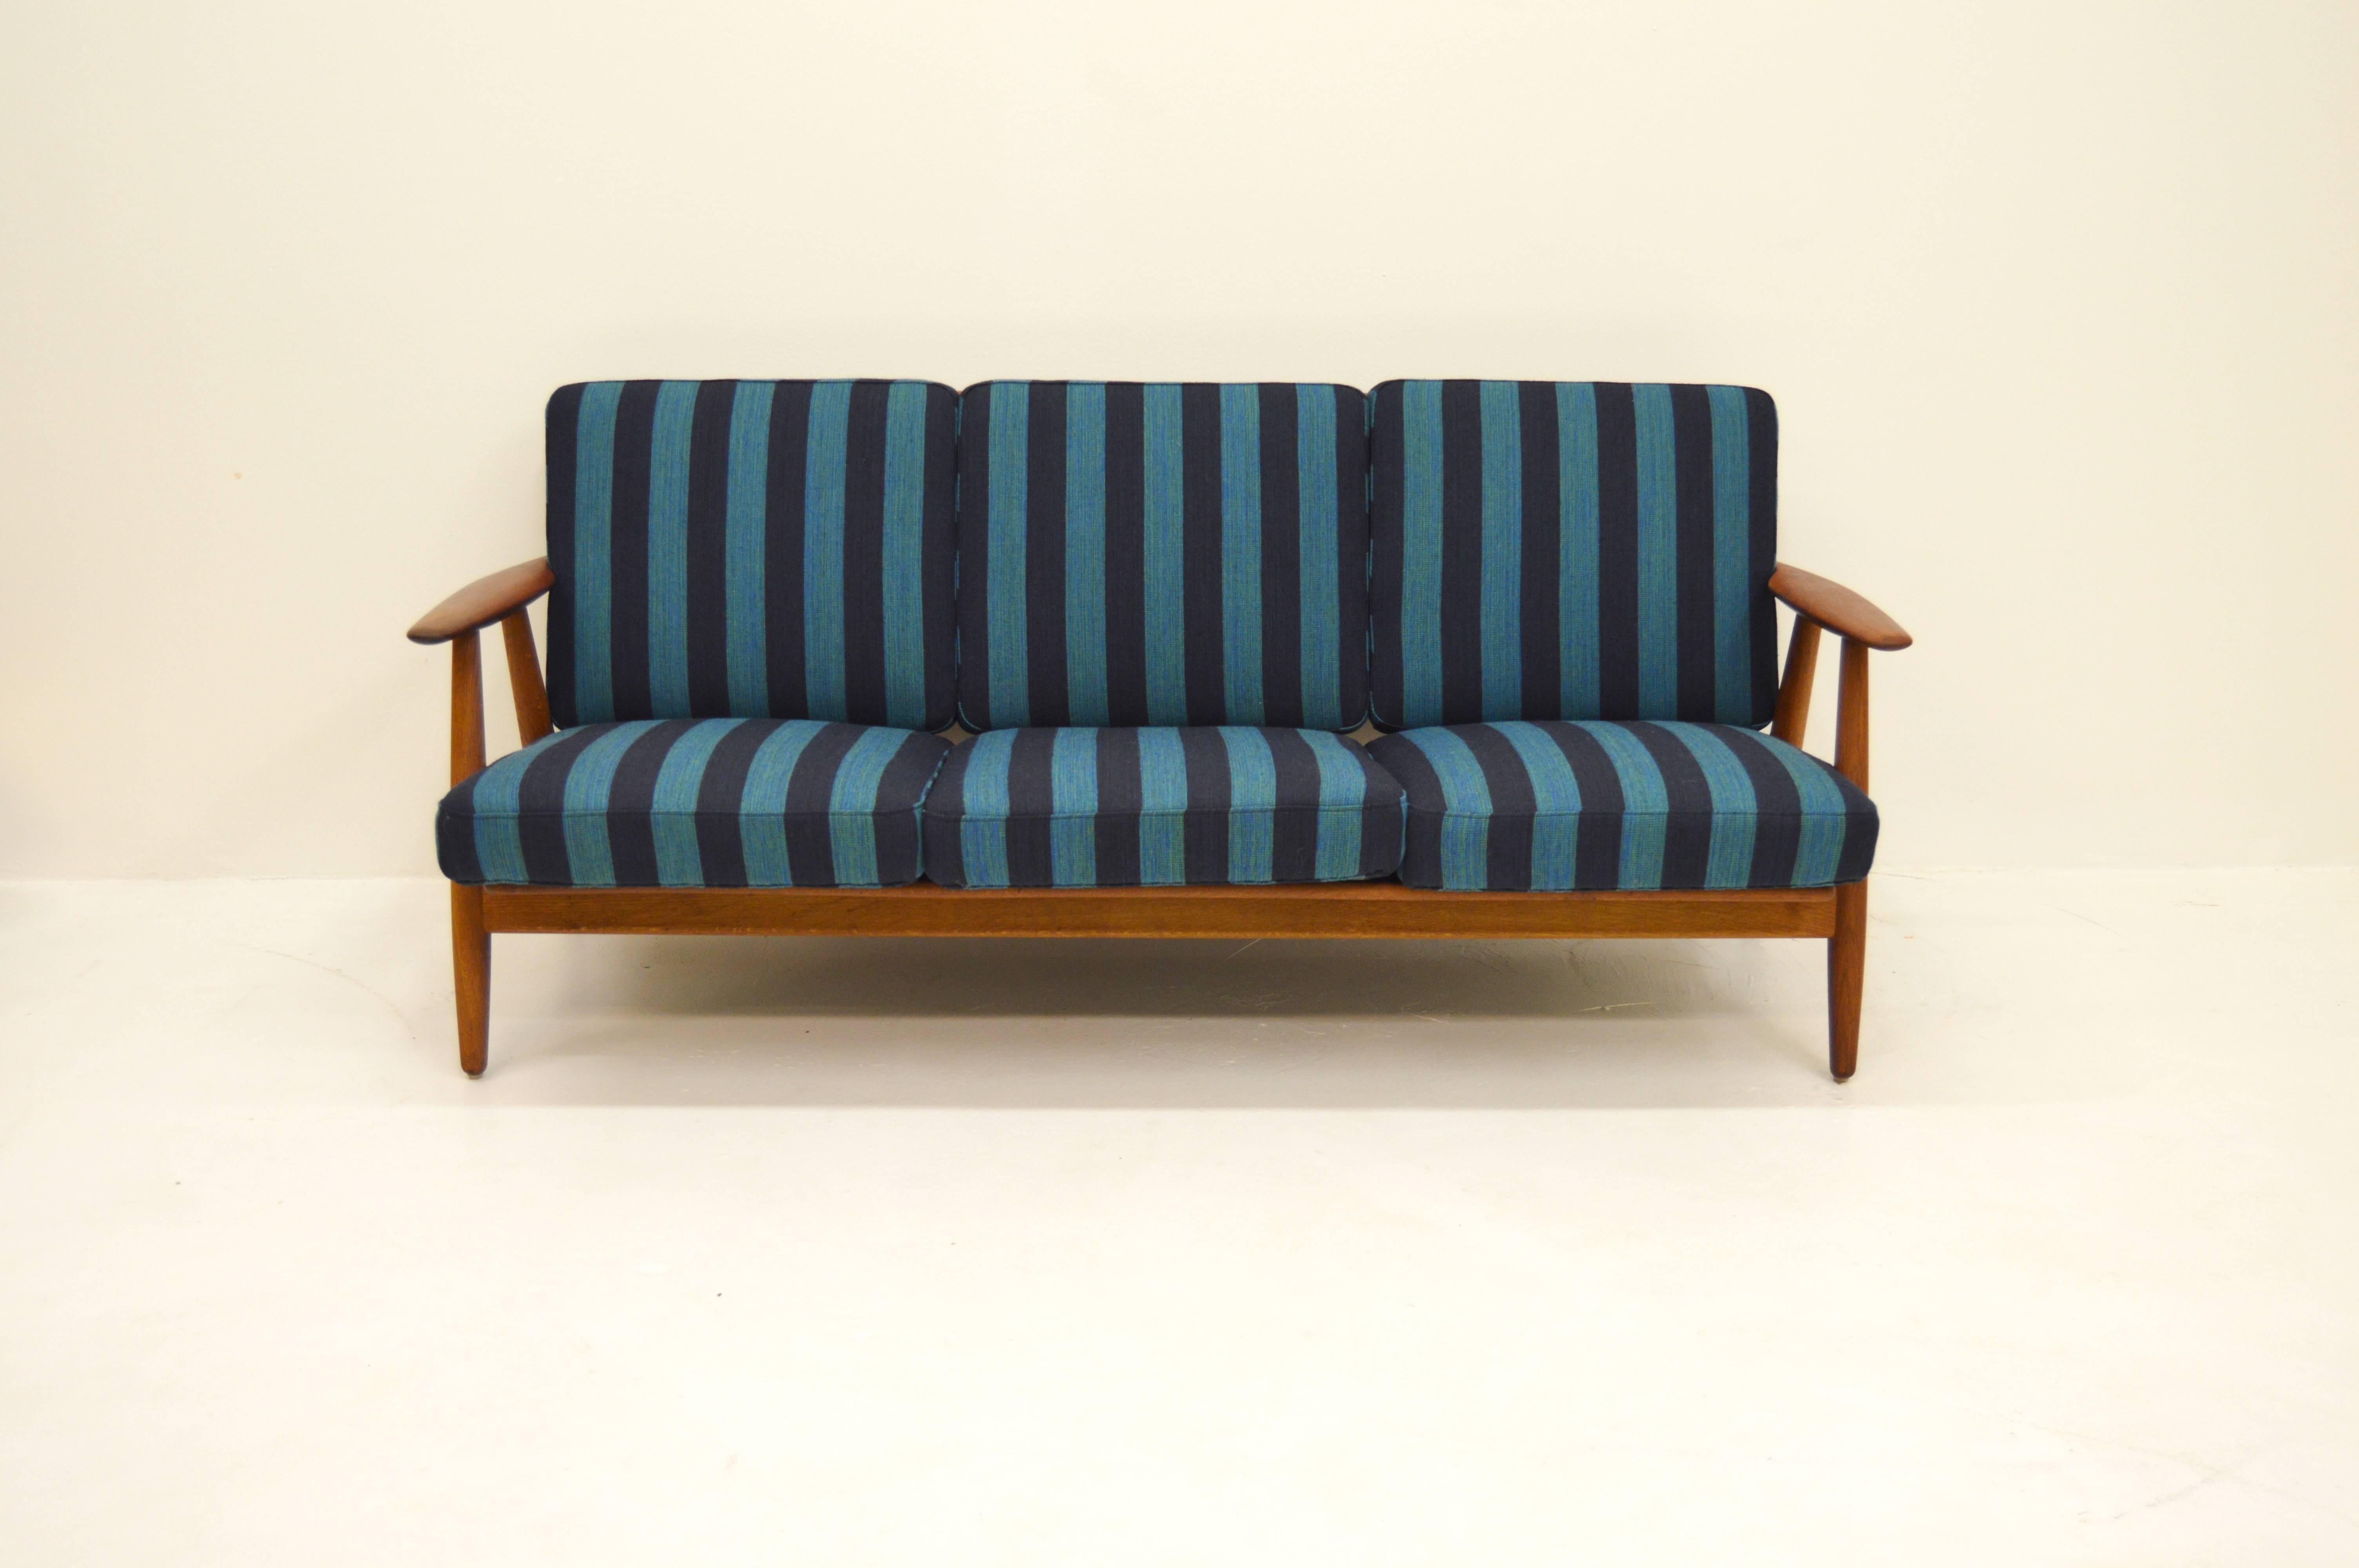 Sofa designed by Hans J Wegner for Getama. Model name GE 240.
Newly upholstered. 
Rare model with teak armrests and oak frame.